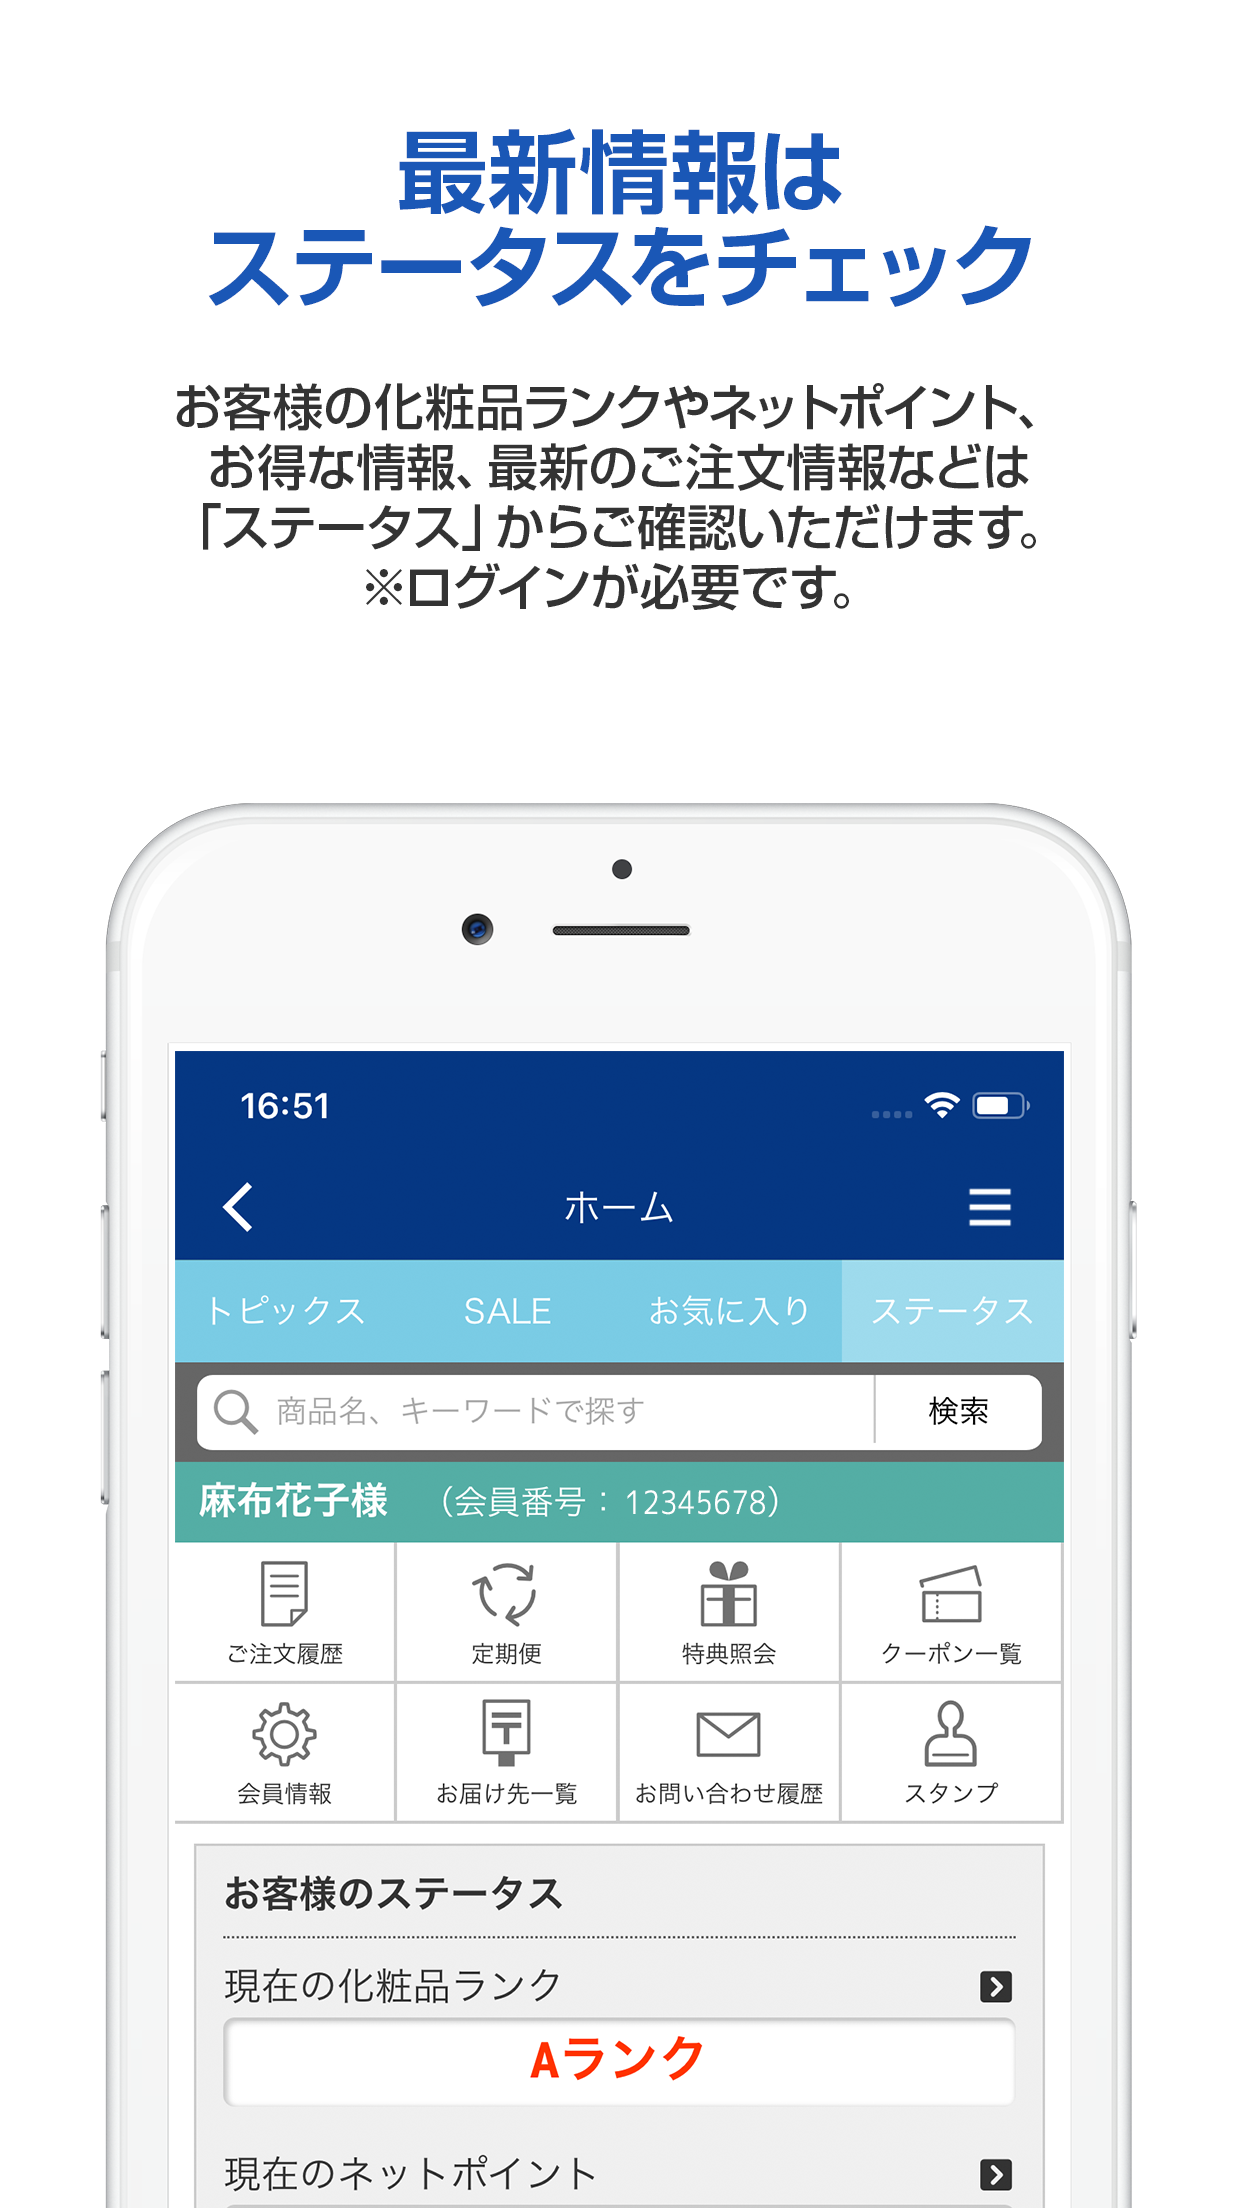 Android application DHCオンラインショップ screenshort